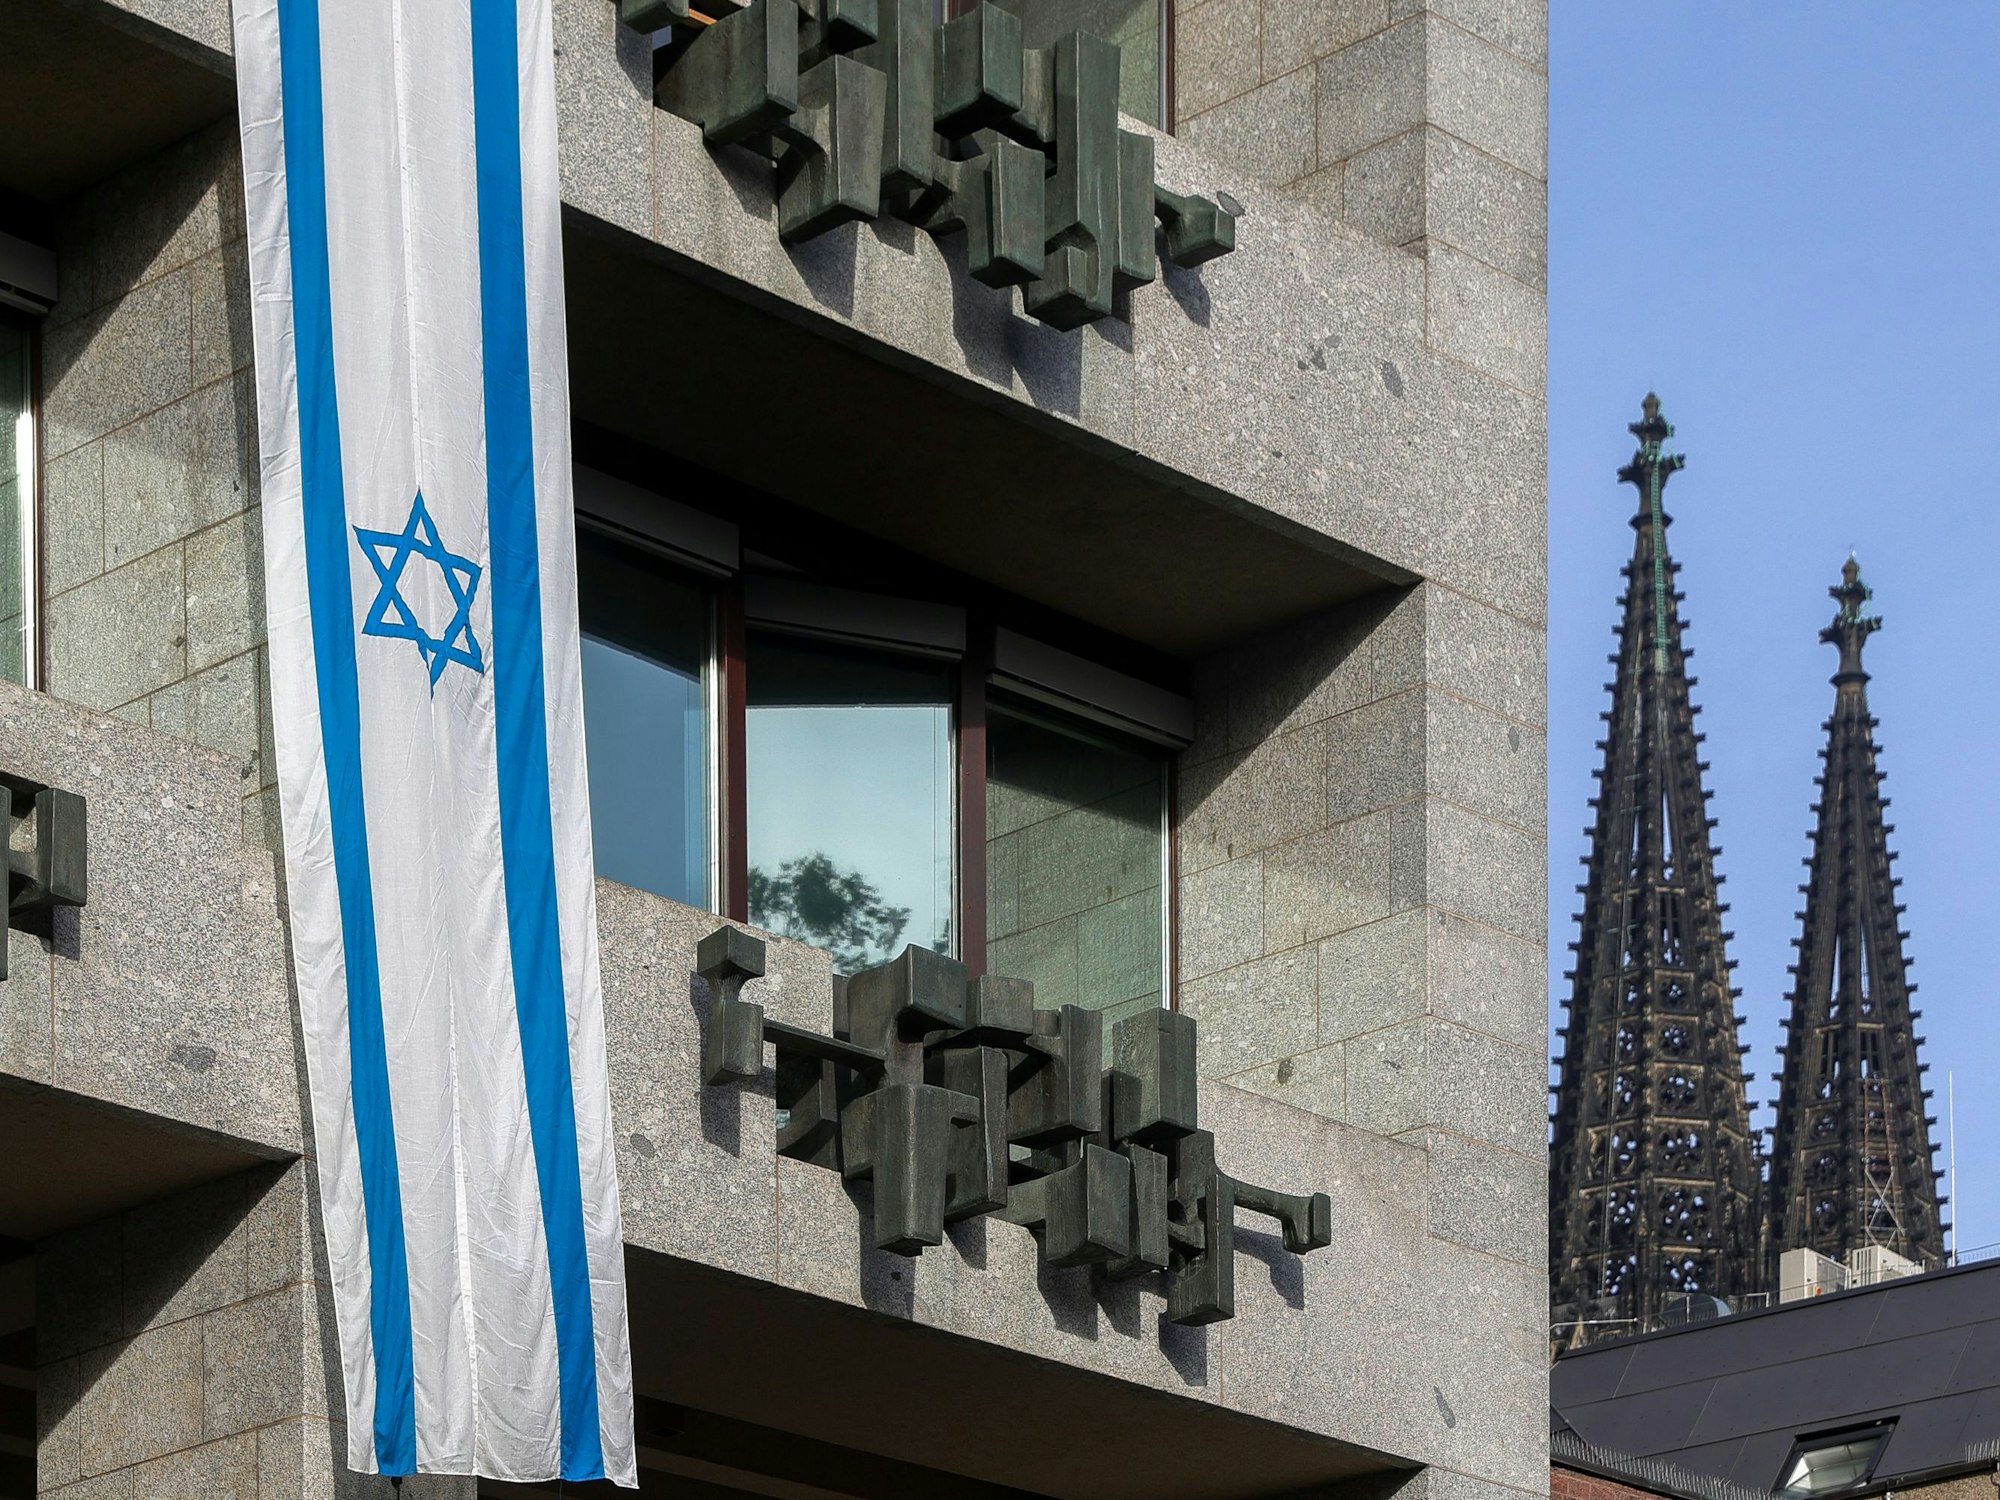 Eine israelische Flagge hängt an der Fassade des Kölner Rathauses.